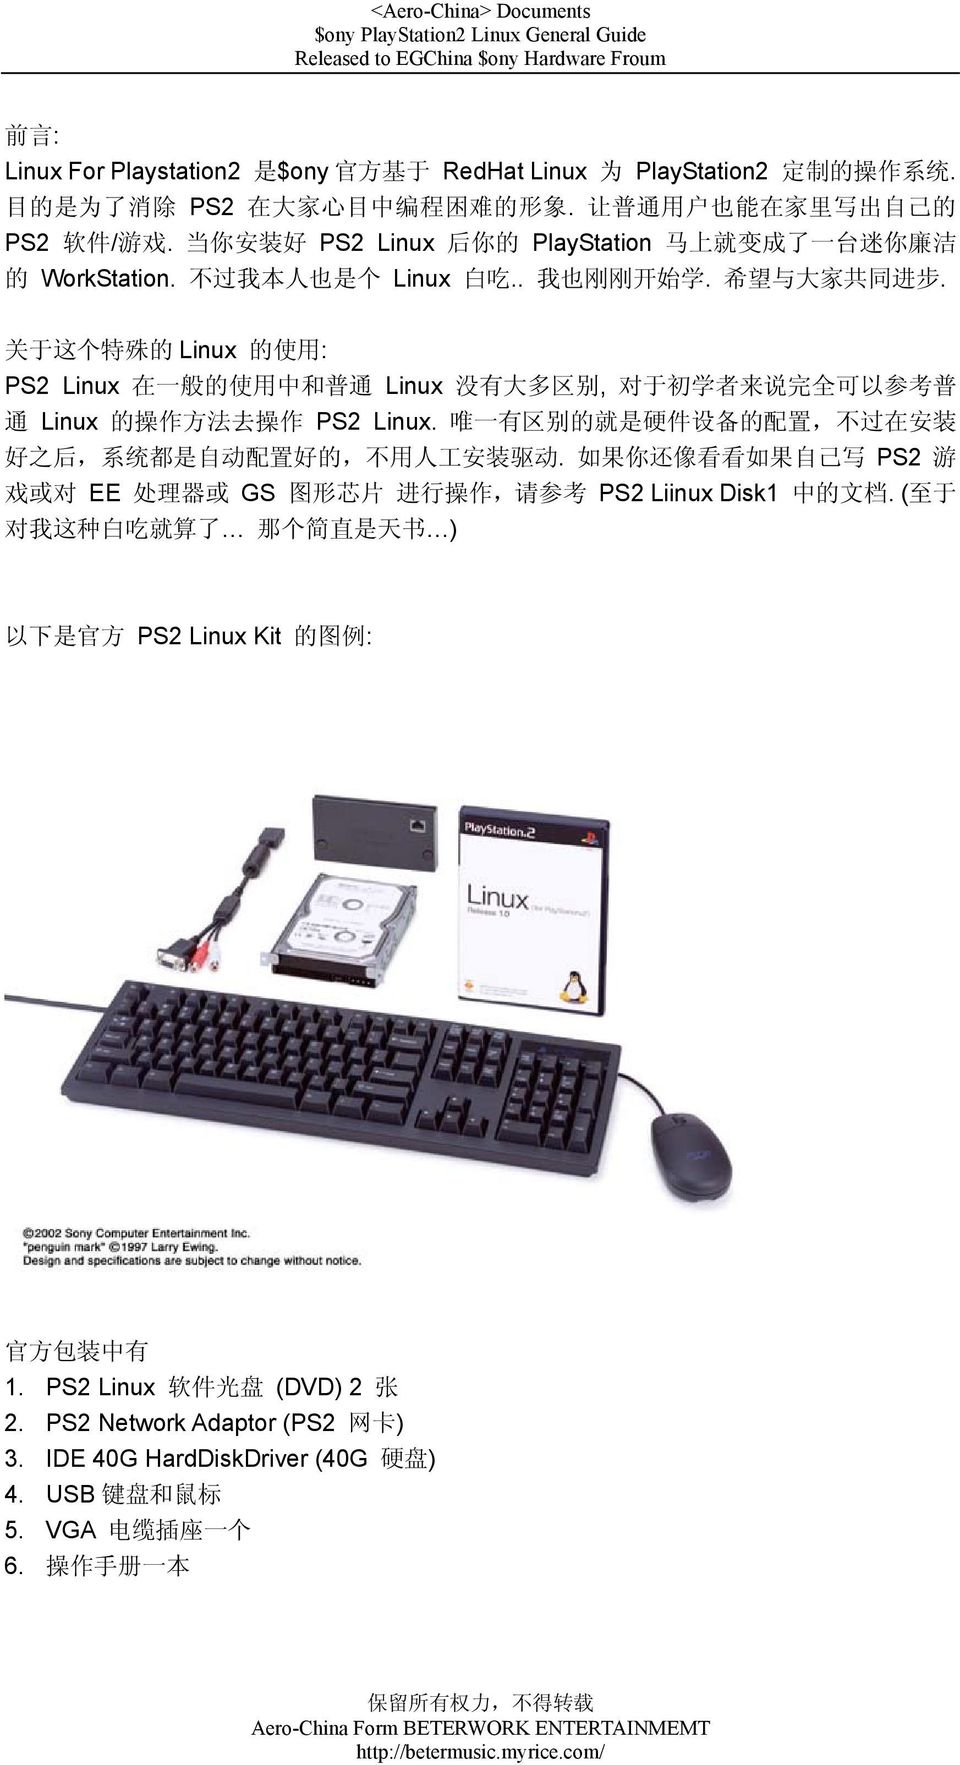 关 于 这 个 特 殊 的 Linux 的 使 用 : PS2 Linux 在 一 般 的 使 用 中 和 普 通 Linux 没 有 大 多 区 别, 对 于 初 学 者 来 说 完 全 可 以 参 考 普 通 Linux 的 操 作 方 法 去 操 作 PS2 Linux.